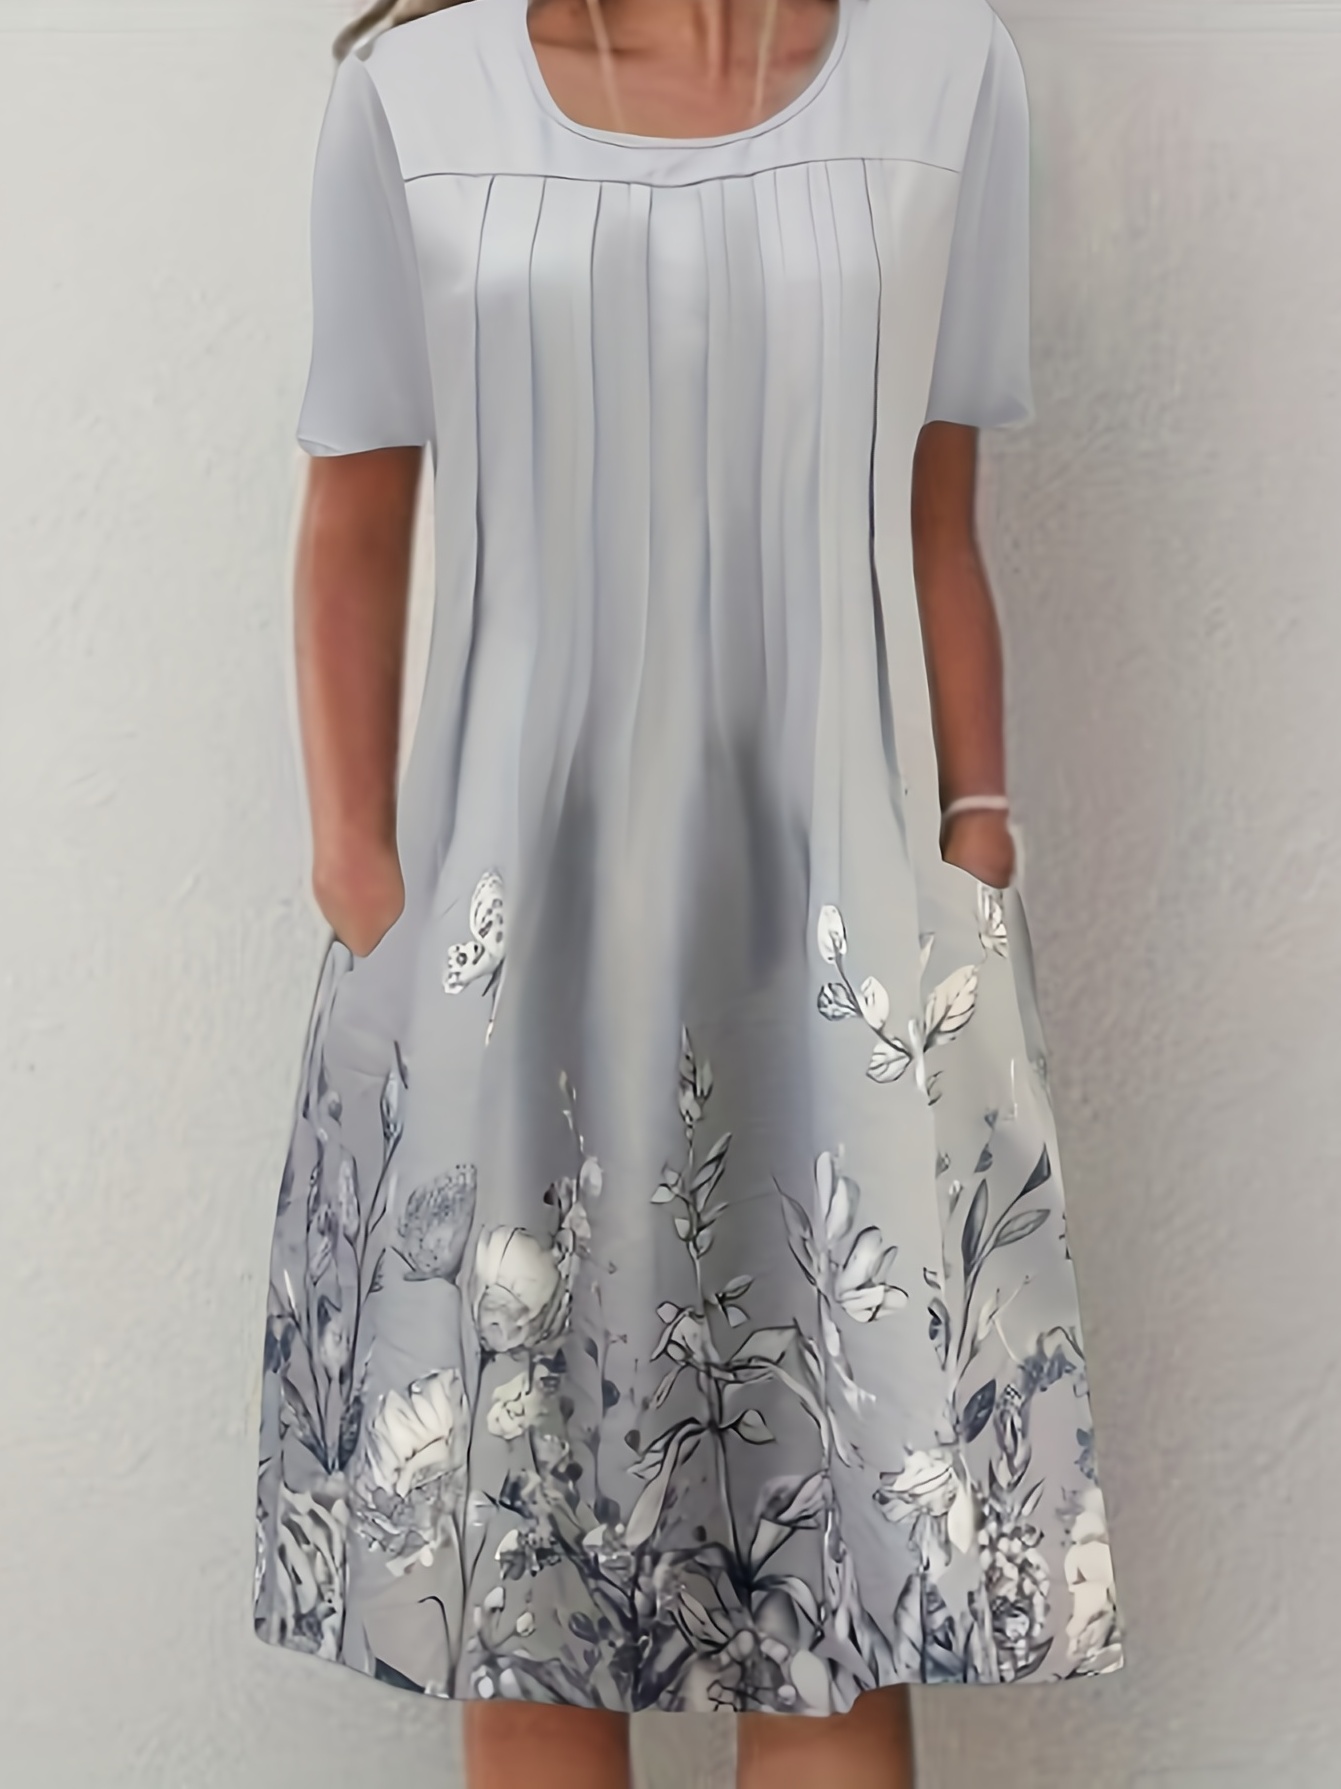 Vestido frontal plissado com estampa floral, vestido casual manga curta com dois bolsos, roupas femininas